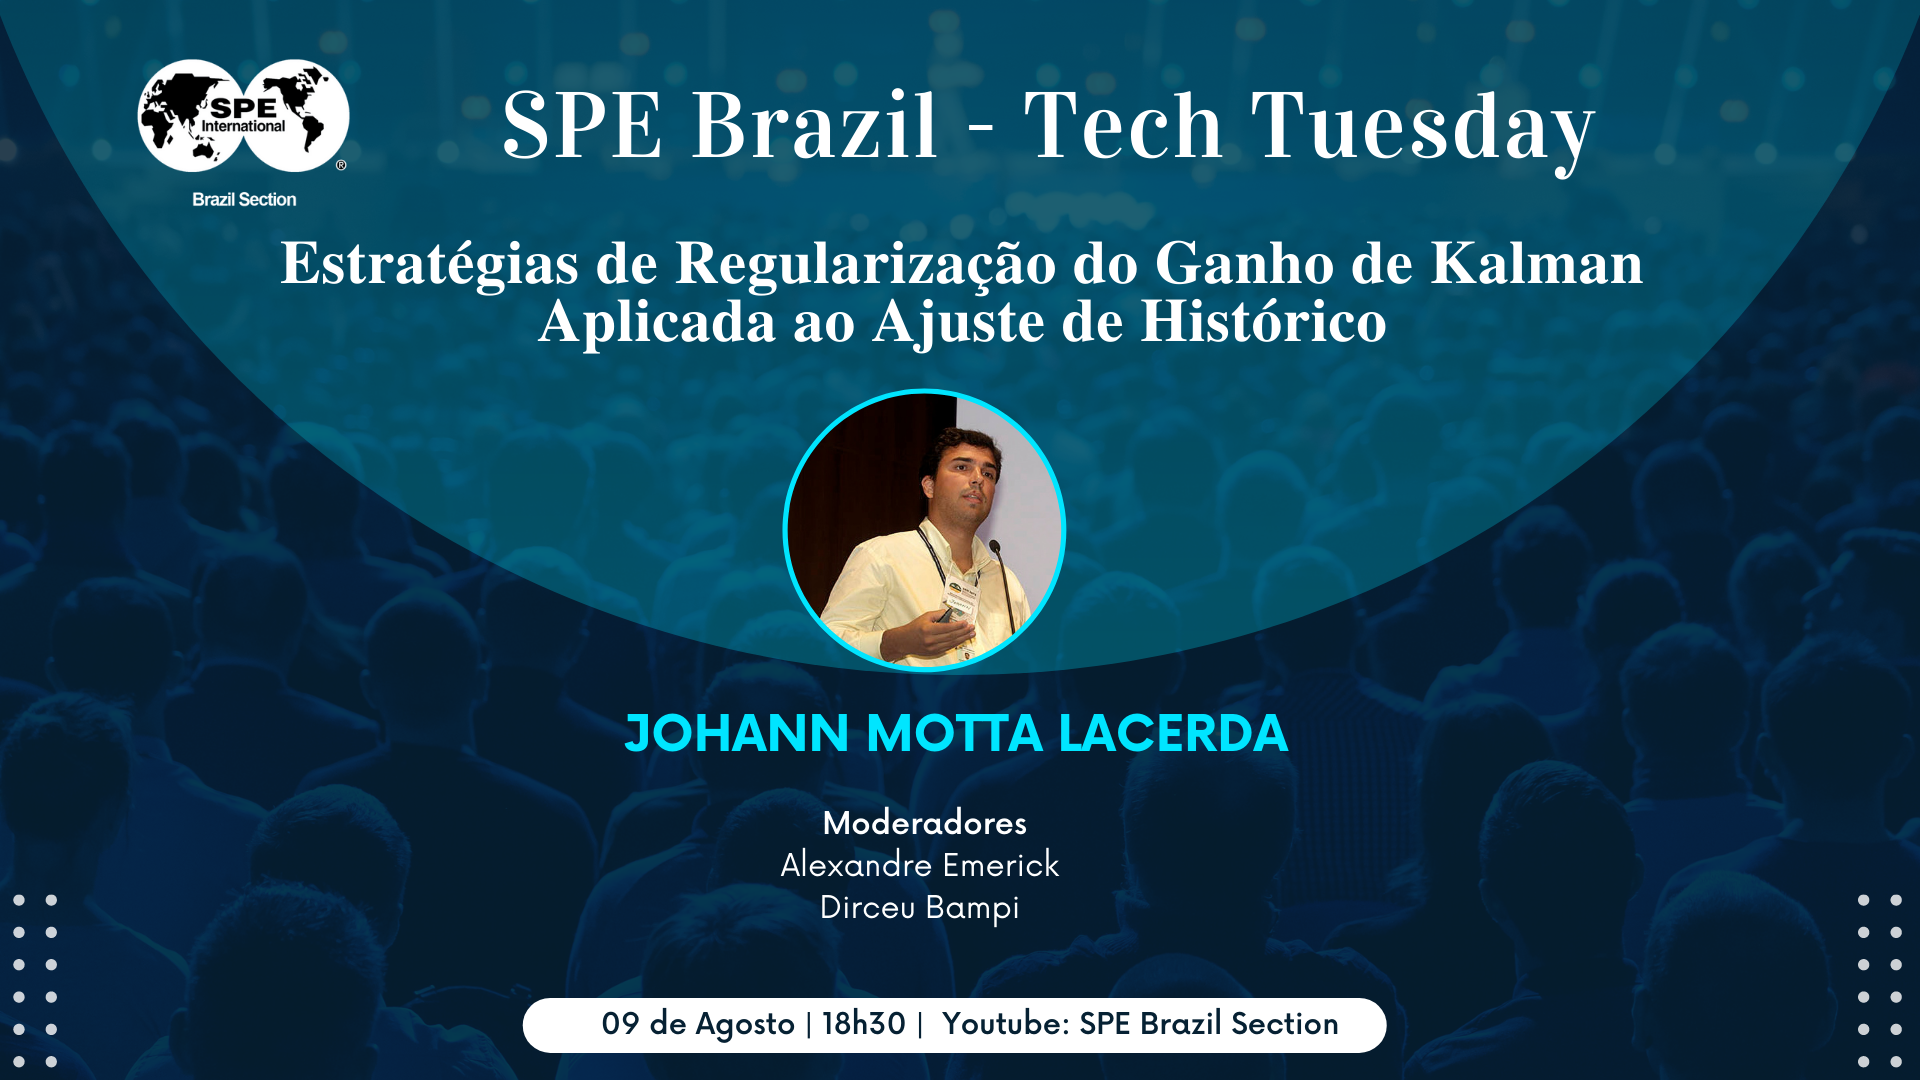 SPE Brazil Tech Tuesday: “Estratégias de Regularização do Ganho de Kalman Aplicada ao Ajuste de Histórico”